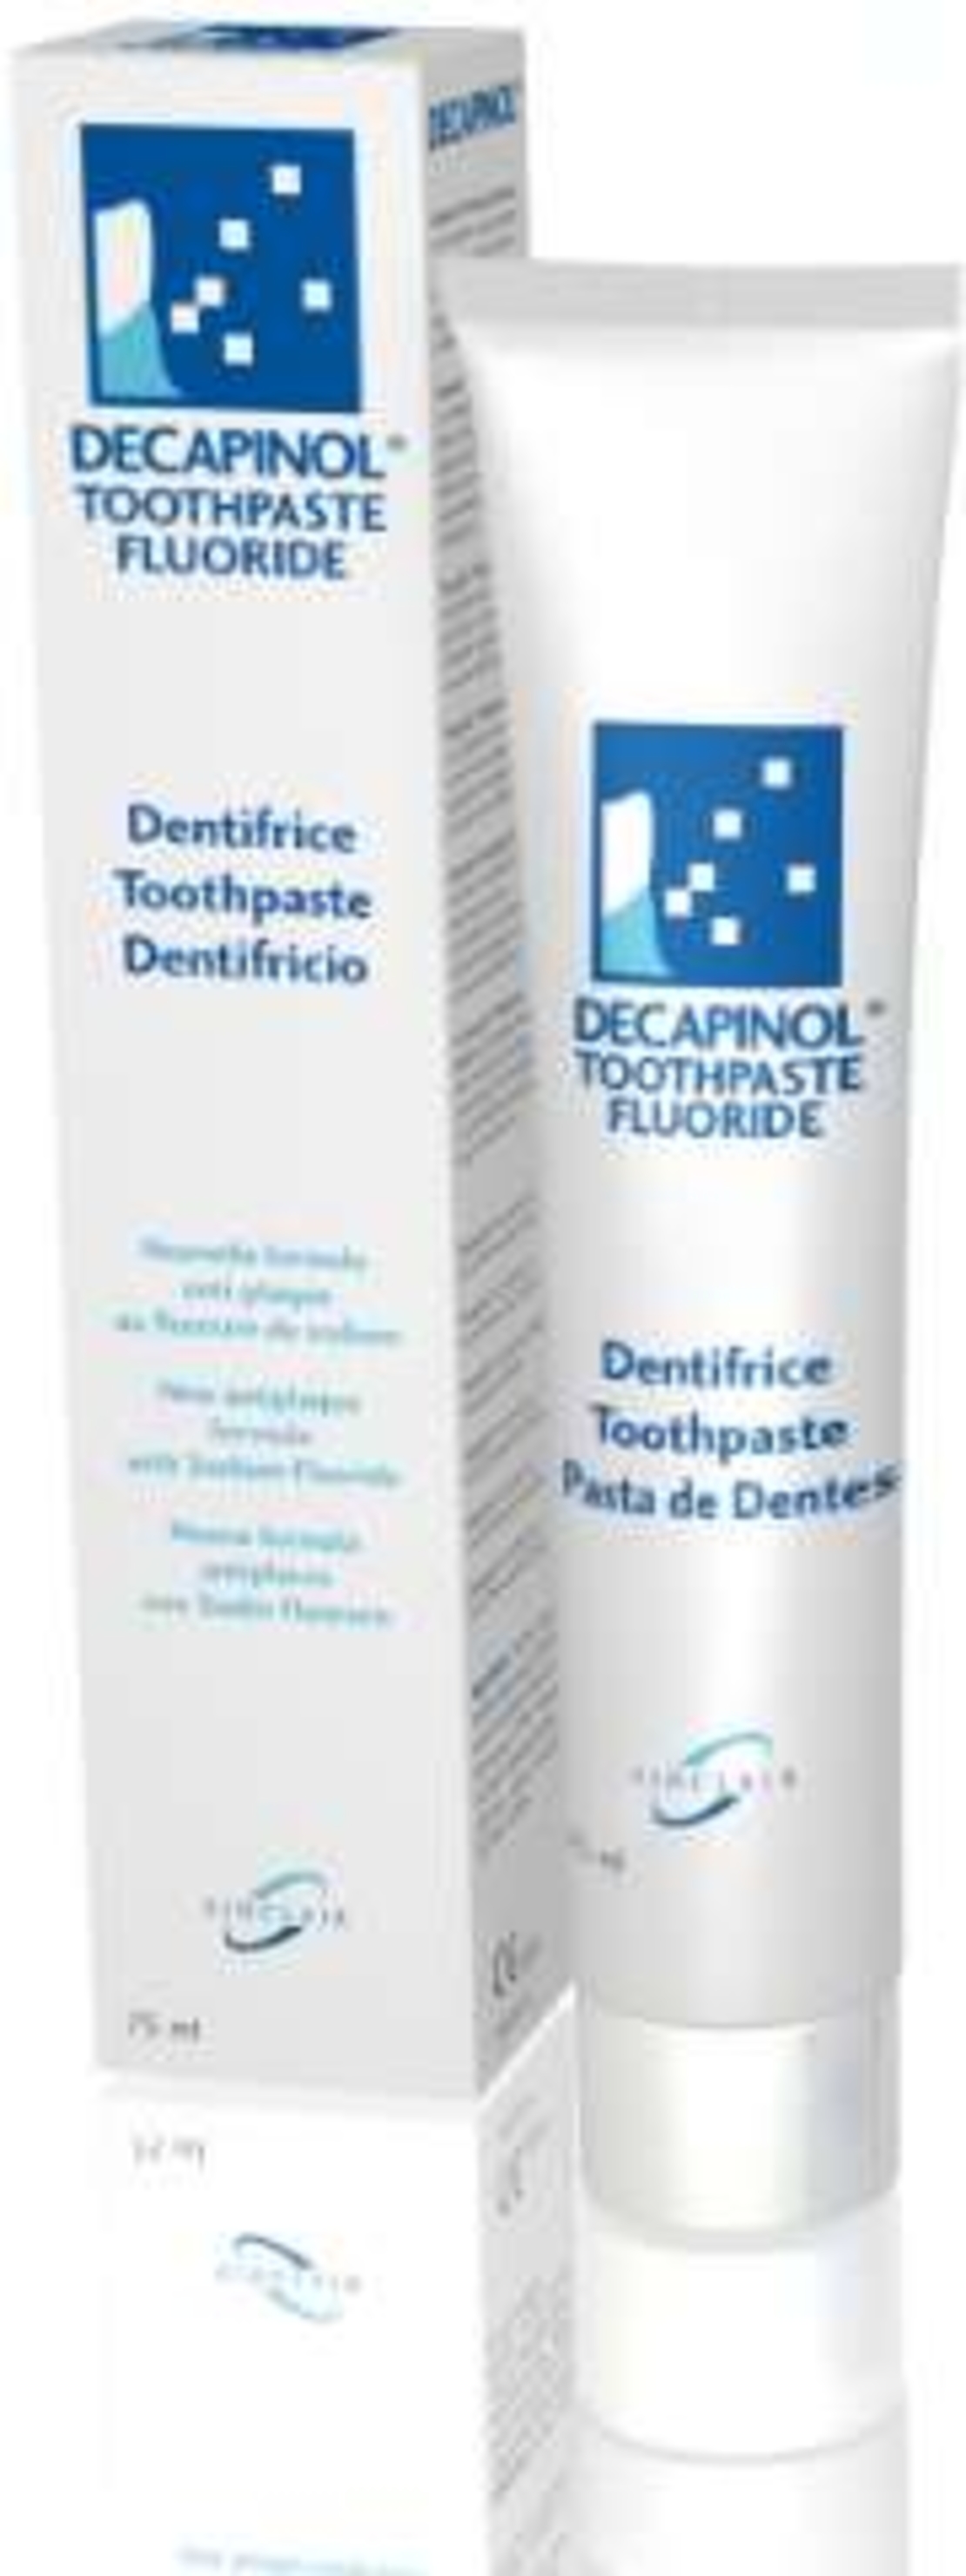 דקפינול משחת שיניים Decapinol Toothpaste